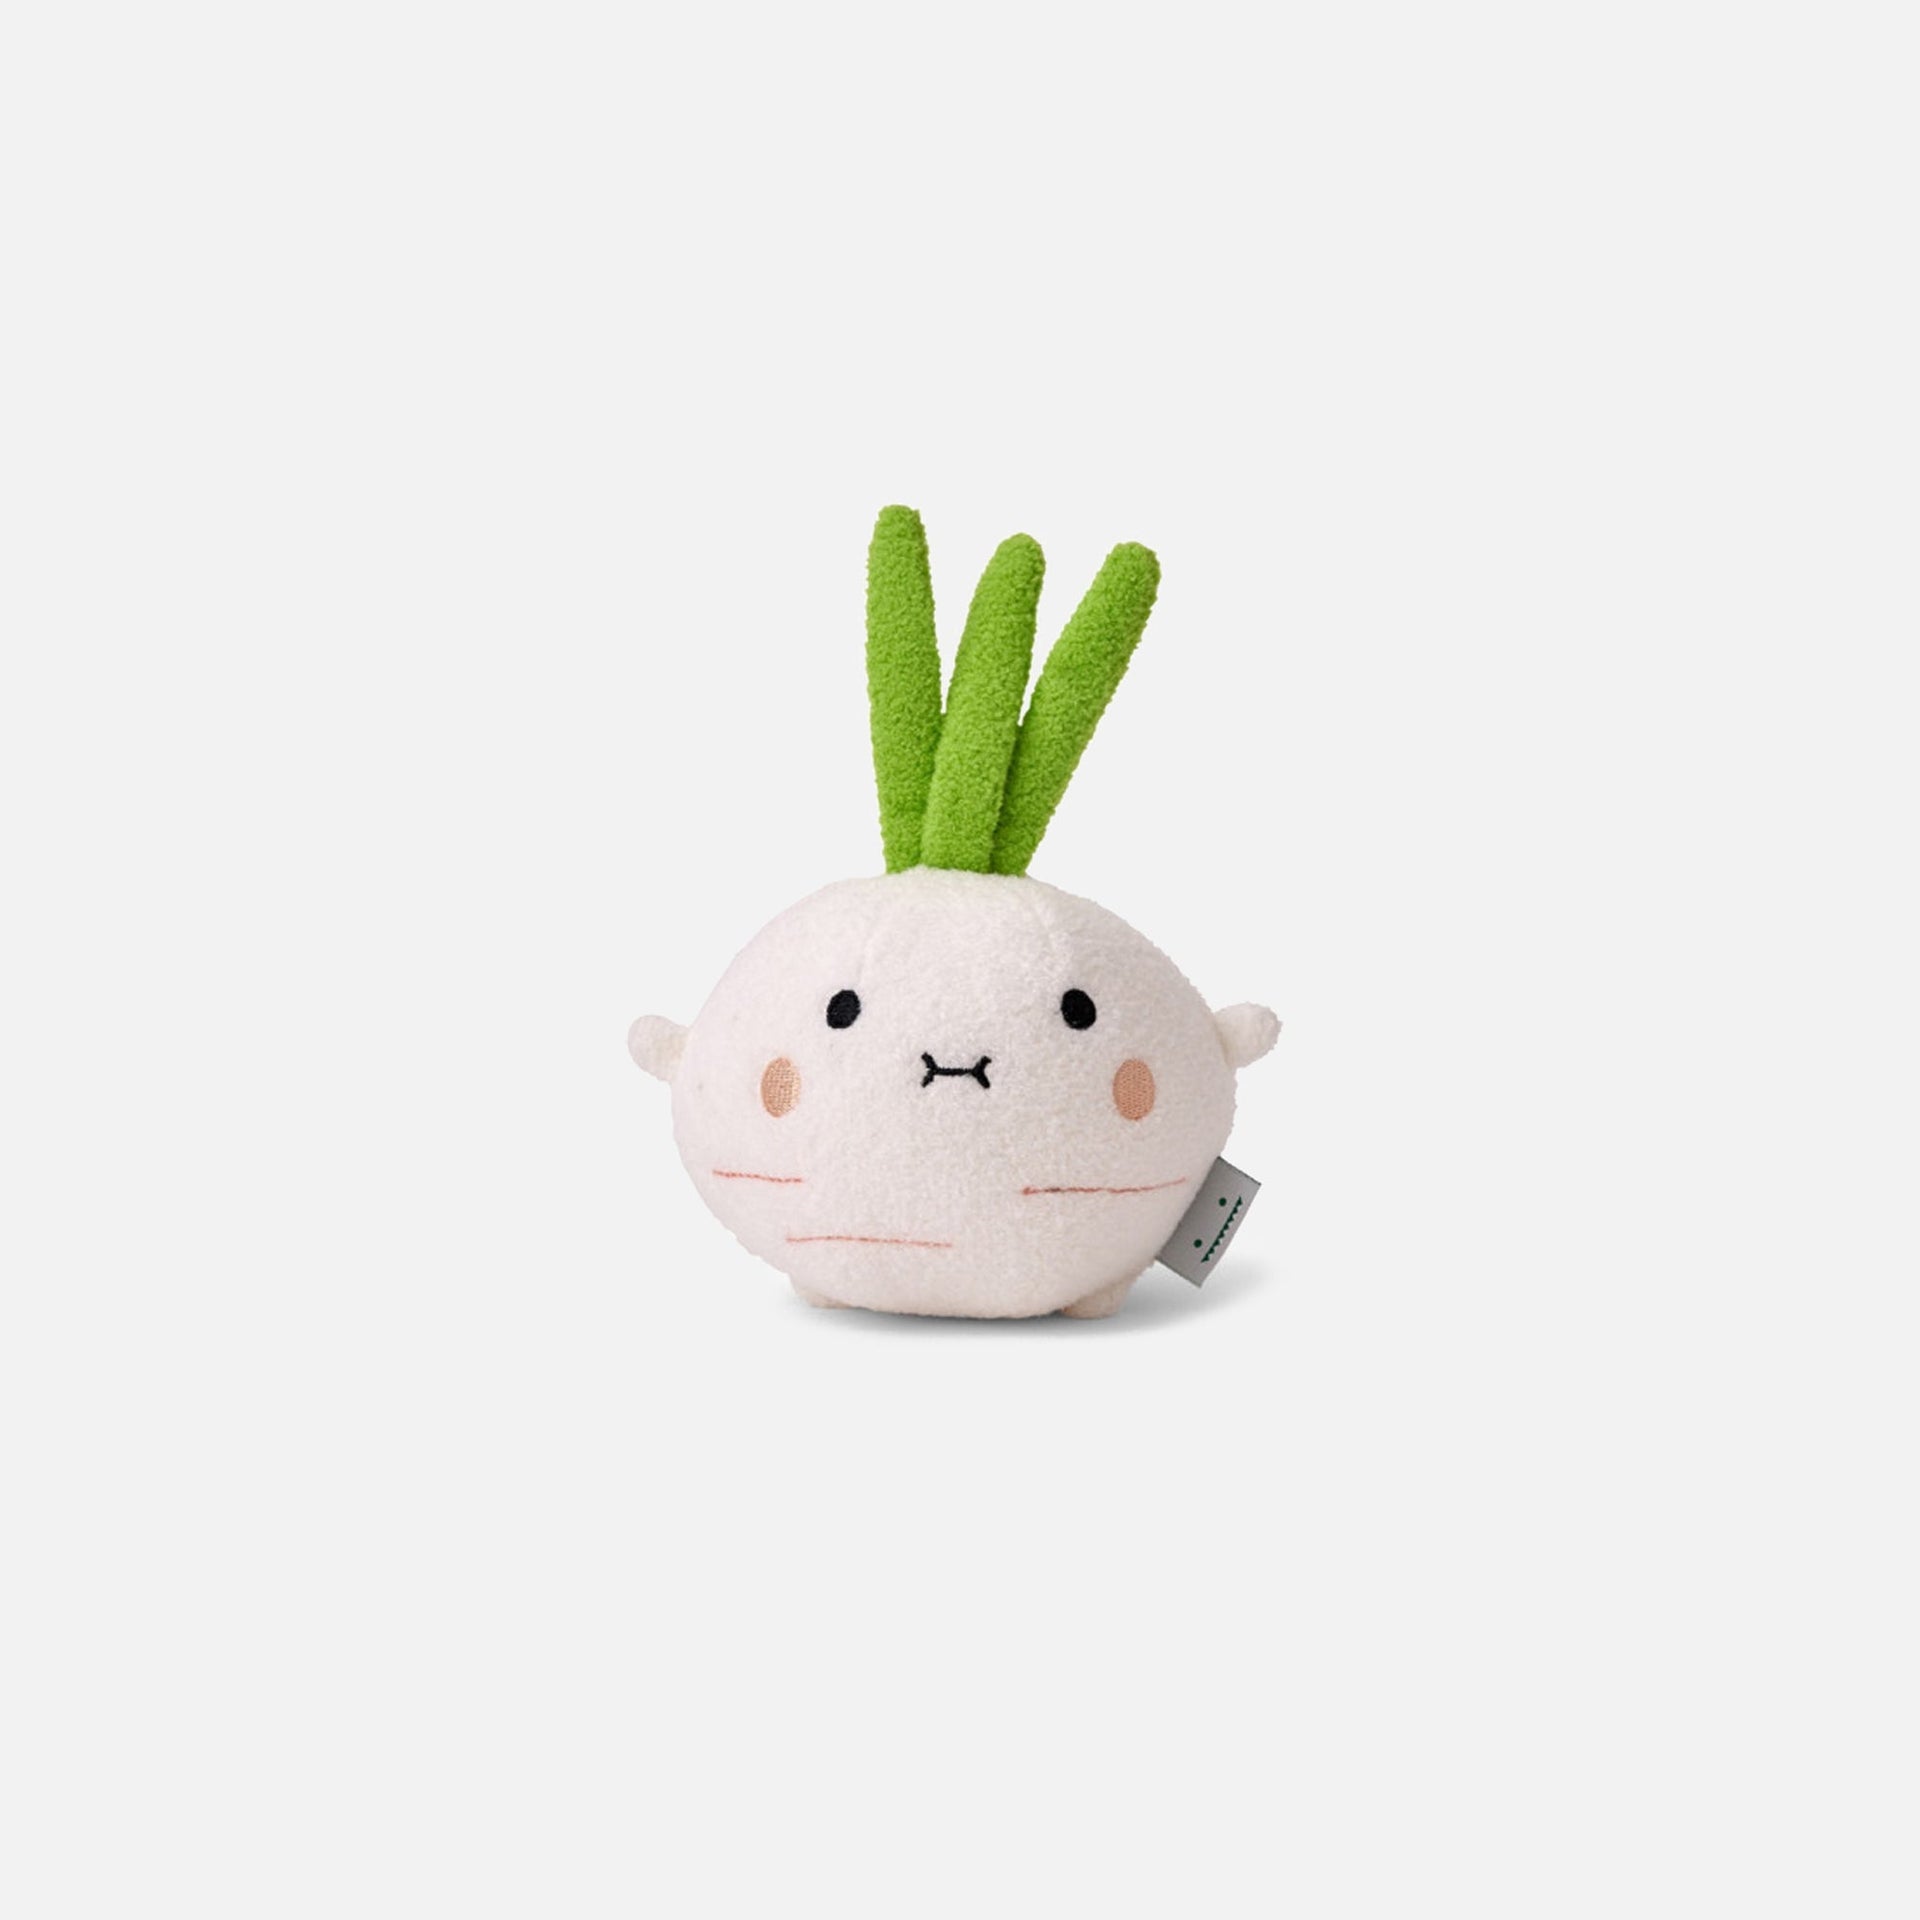 Noodoll Riceradish Mini Plush Toy